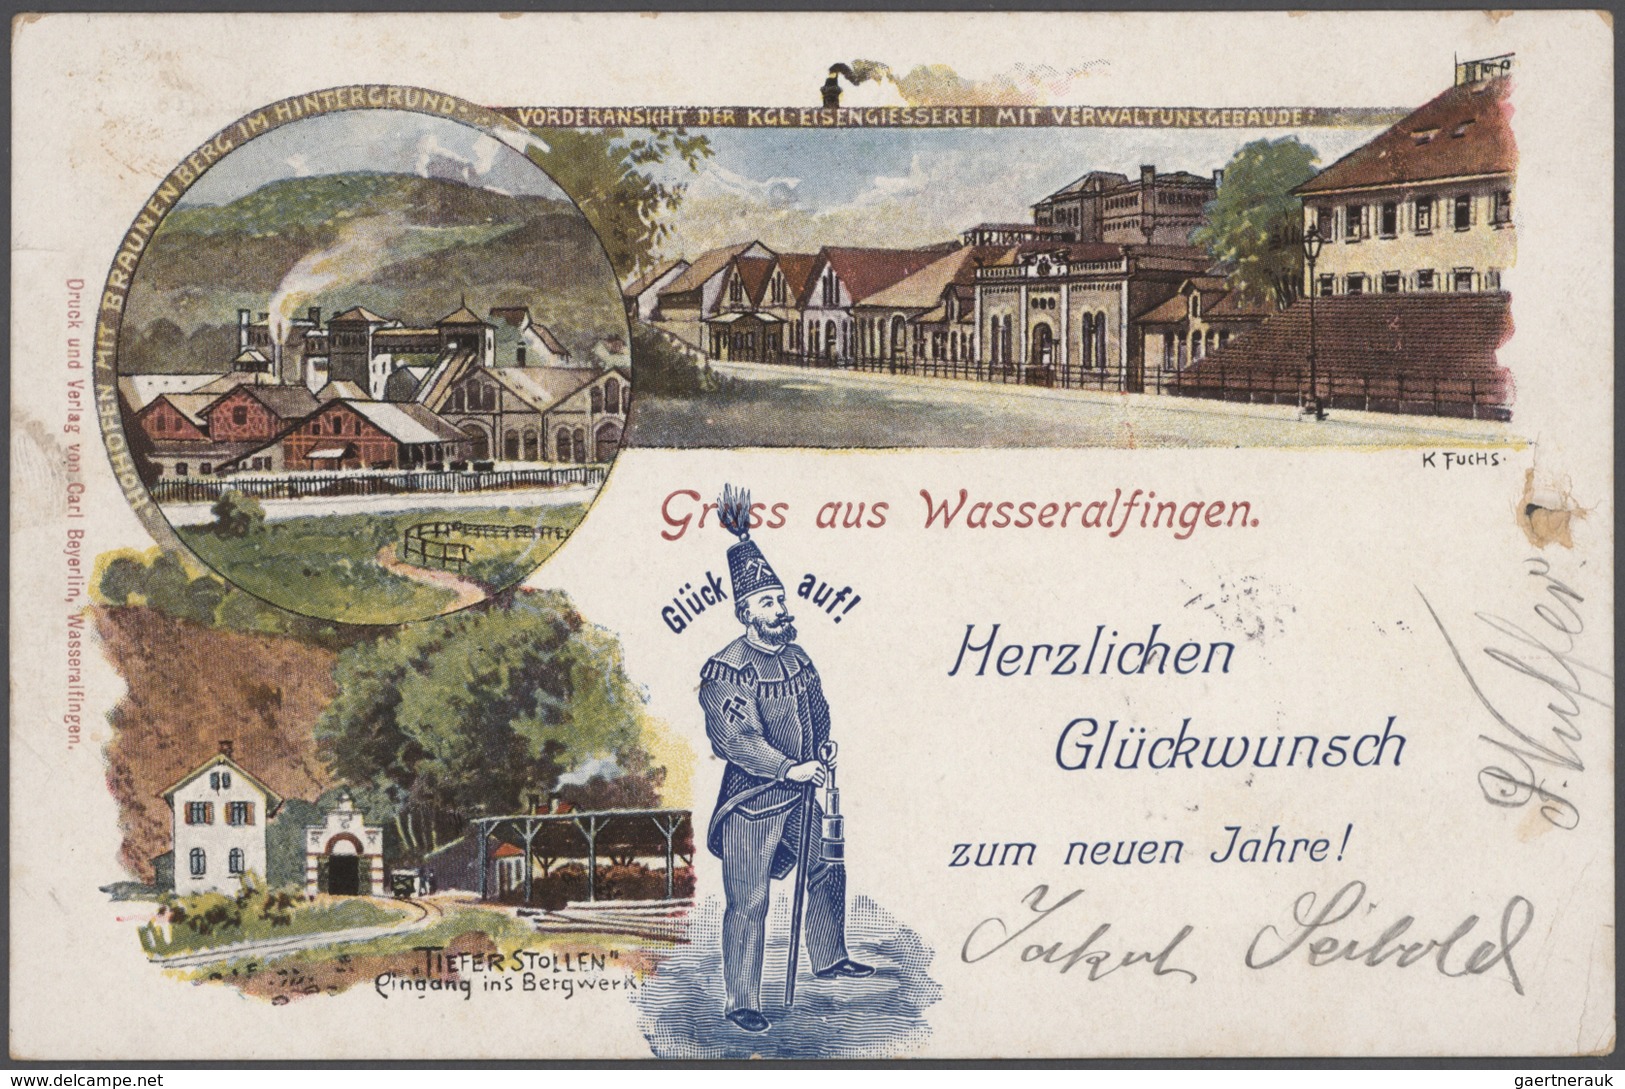 Ansichtskarten: Deutschland: 1895/1940, (ca.), sehenswerter AK-Posten mit 480 Karten, Schwerpunkt Wü